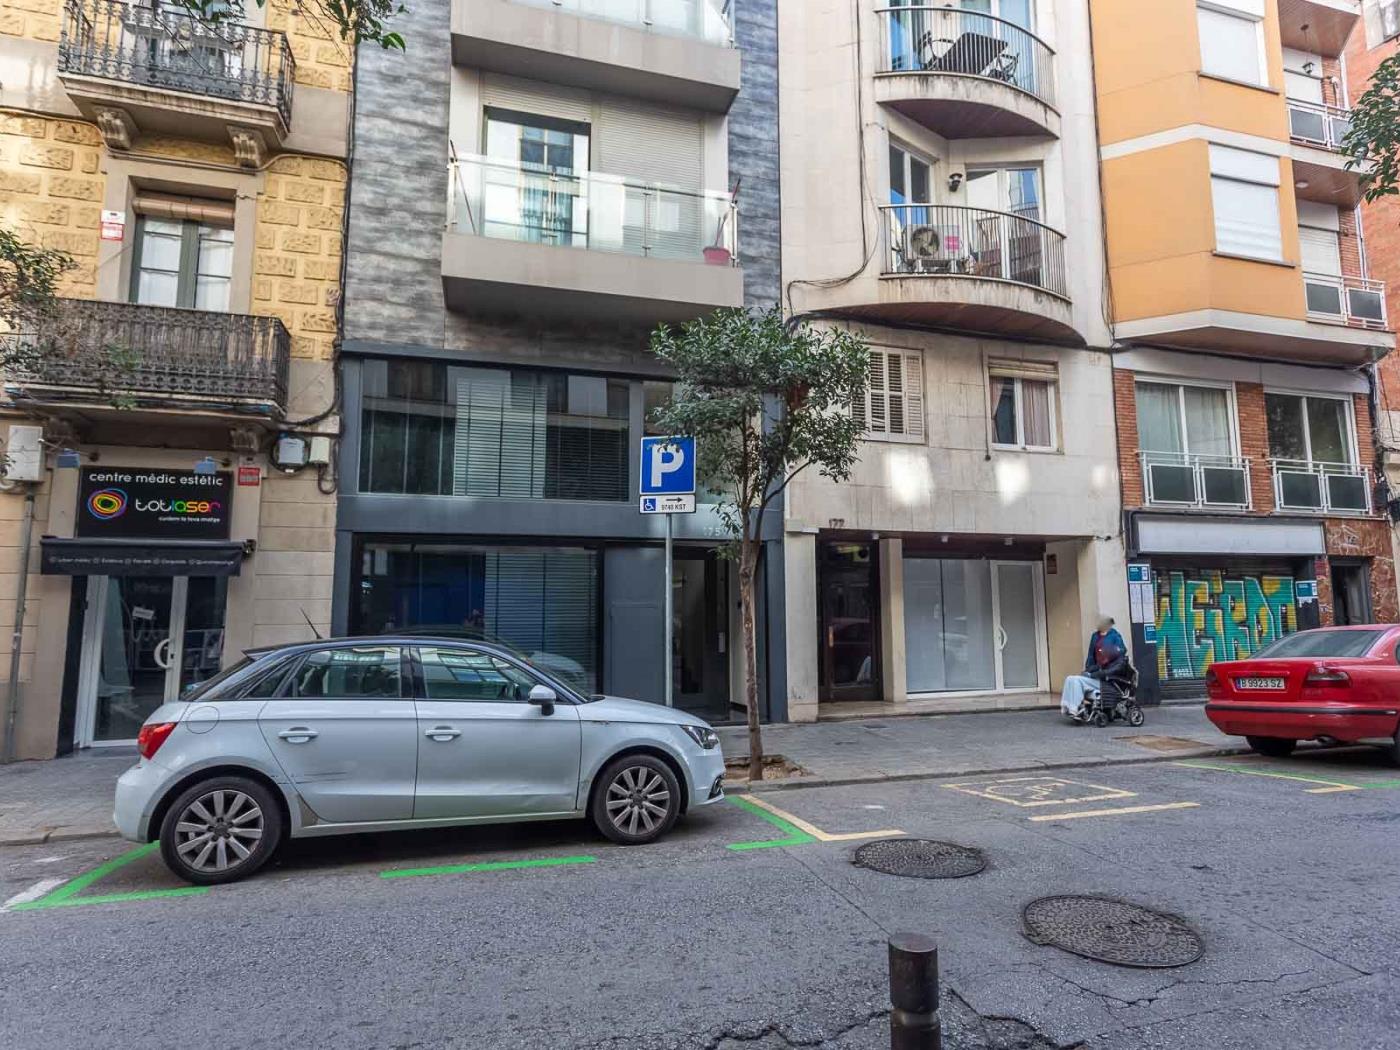 My Space Barcelona Industrial Loft z prywatnym tarasem w Sant Gervasi dla 5 osób - My Space Barcelona Mieszkanie